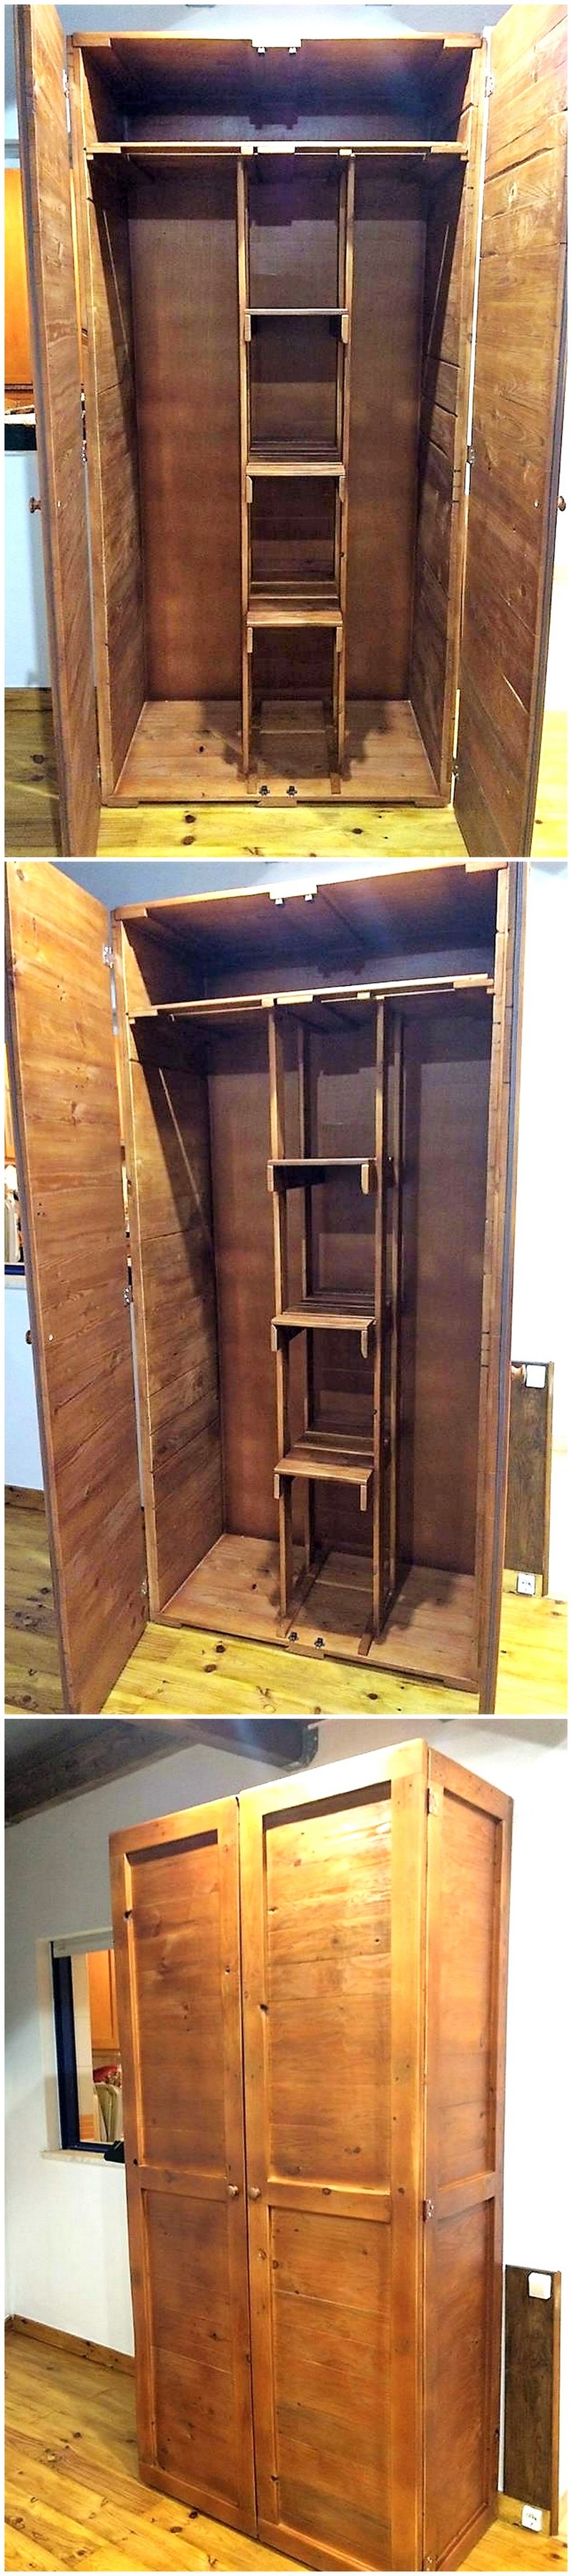 pallet wooden closet